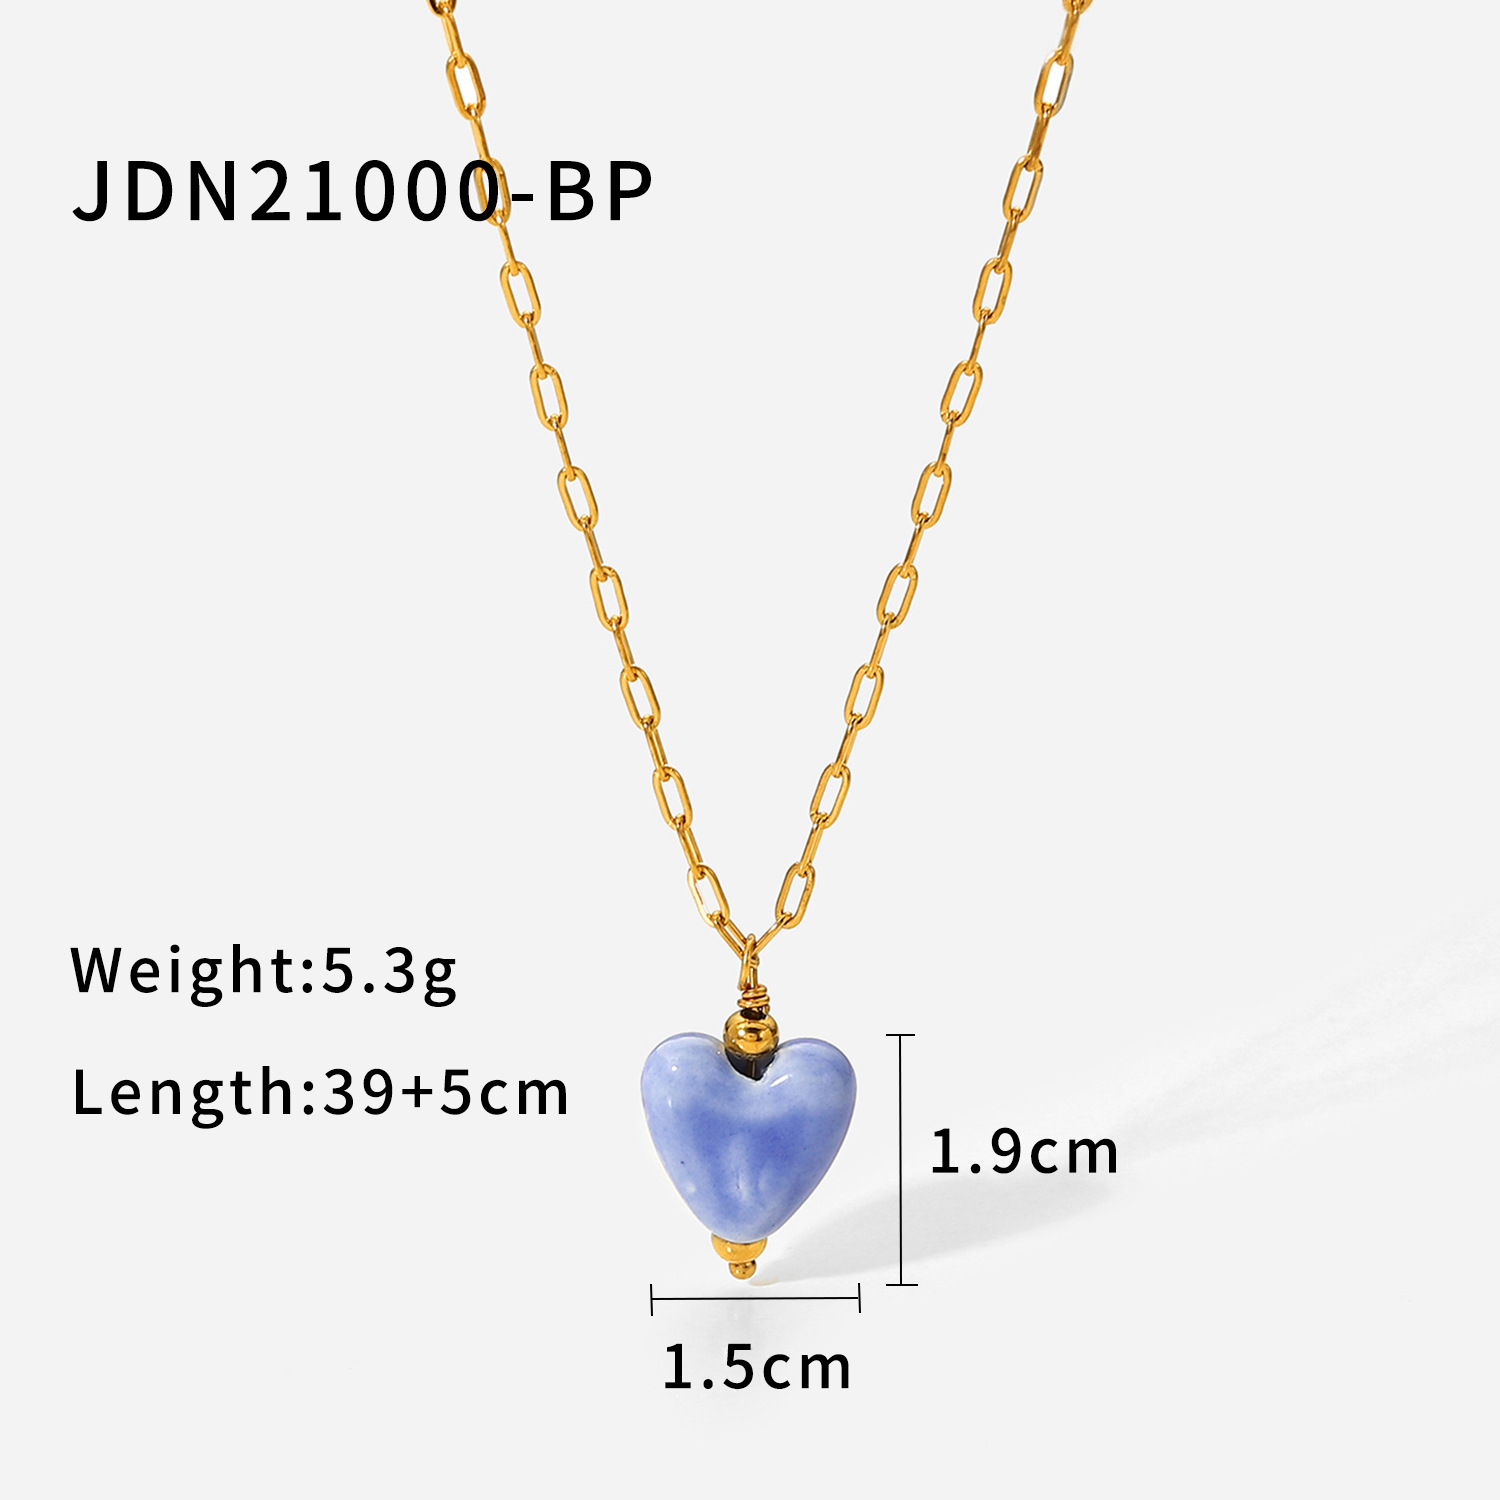 1:JDN21000-BP